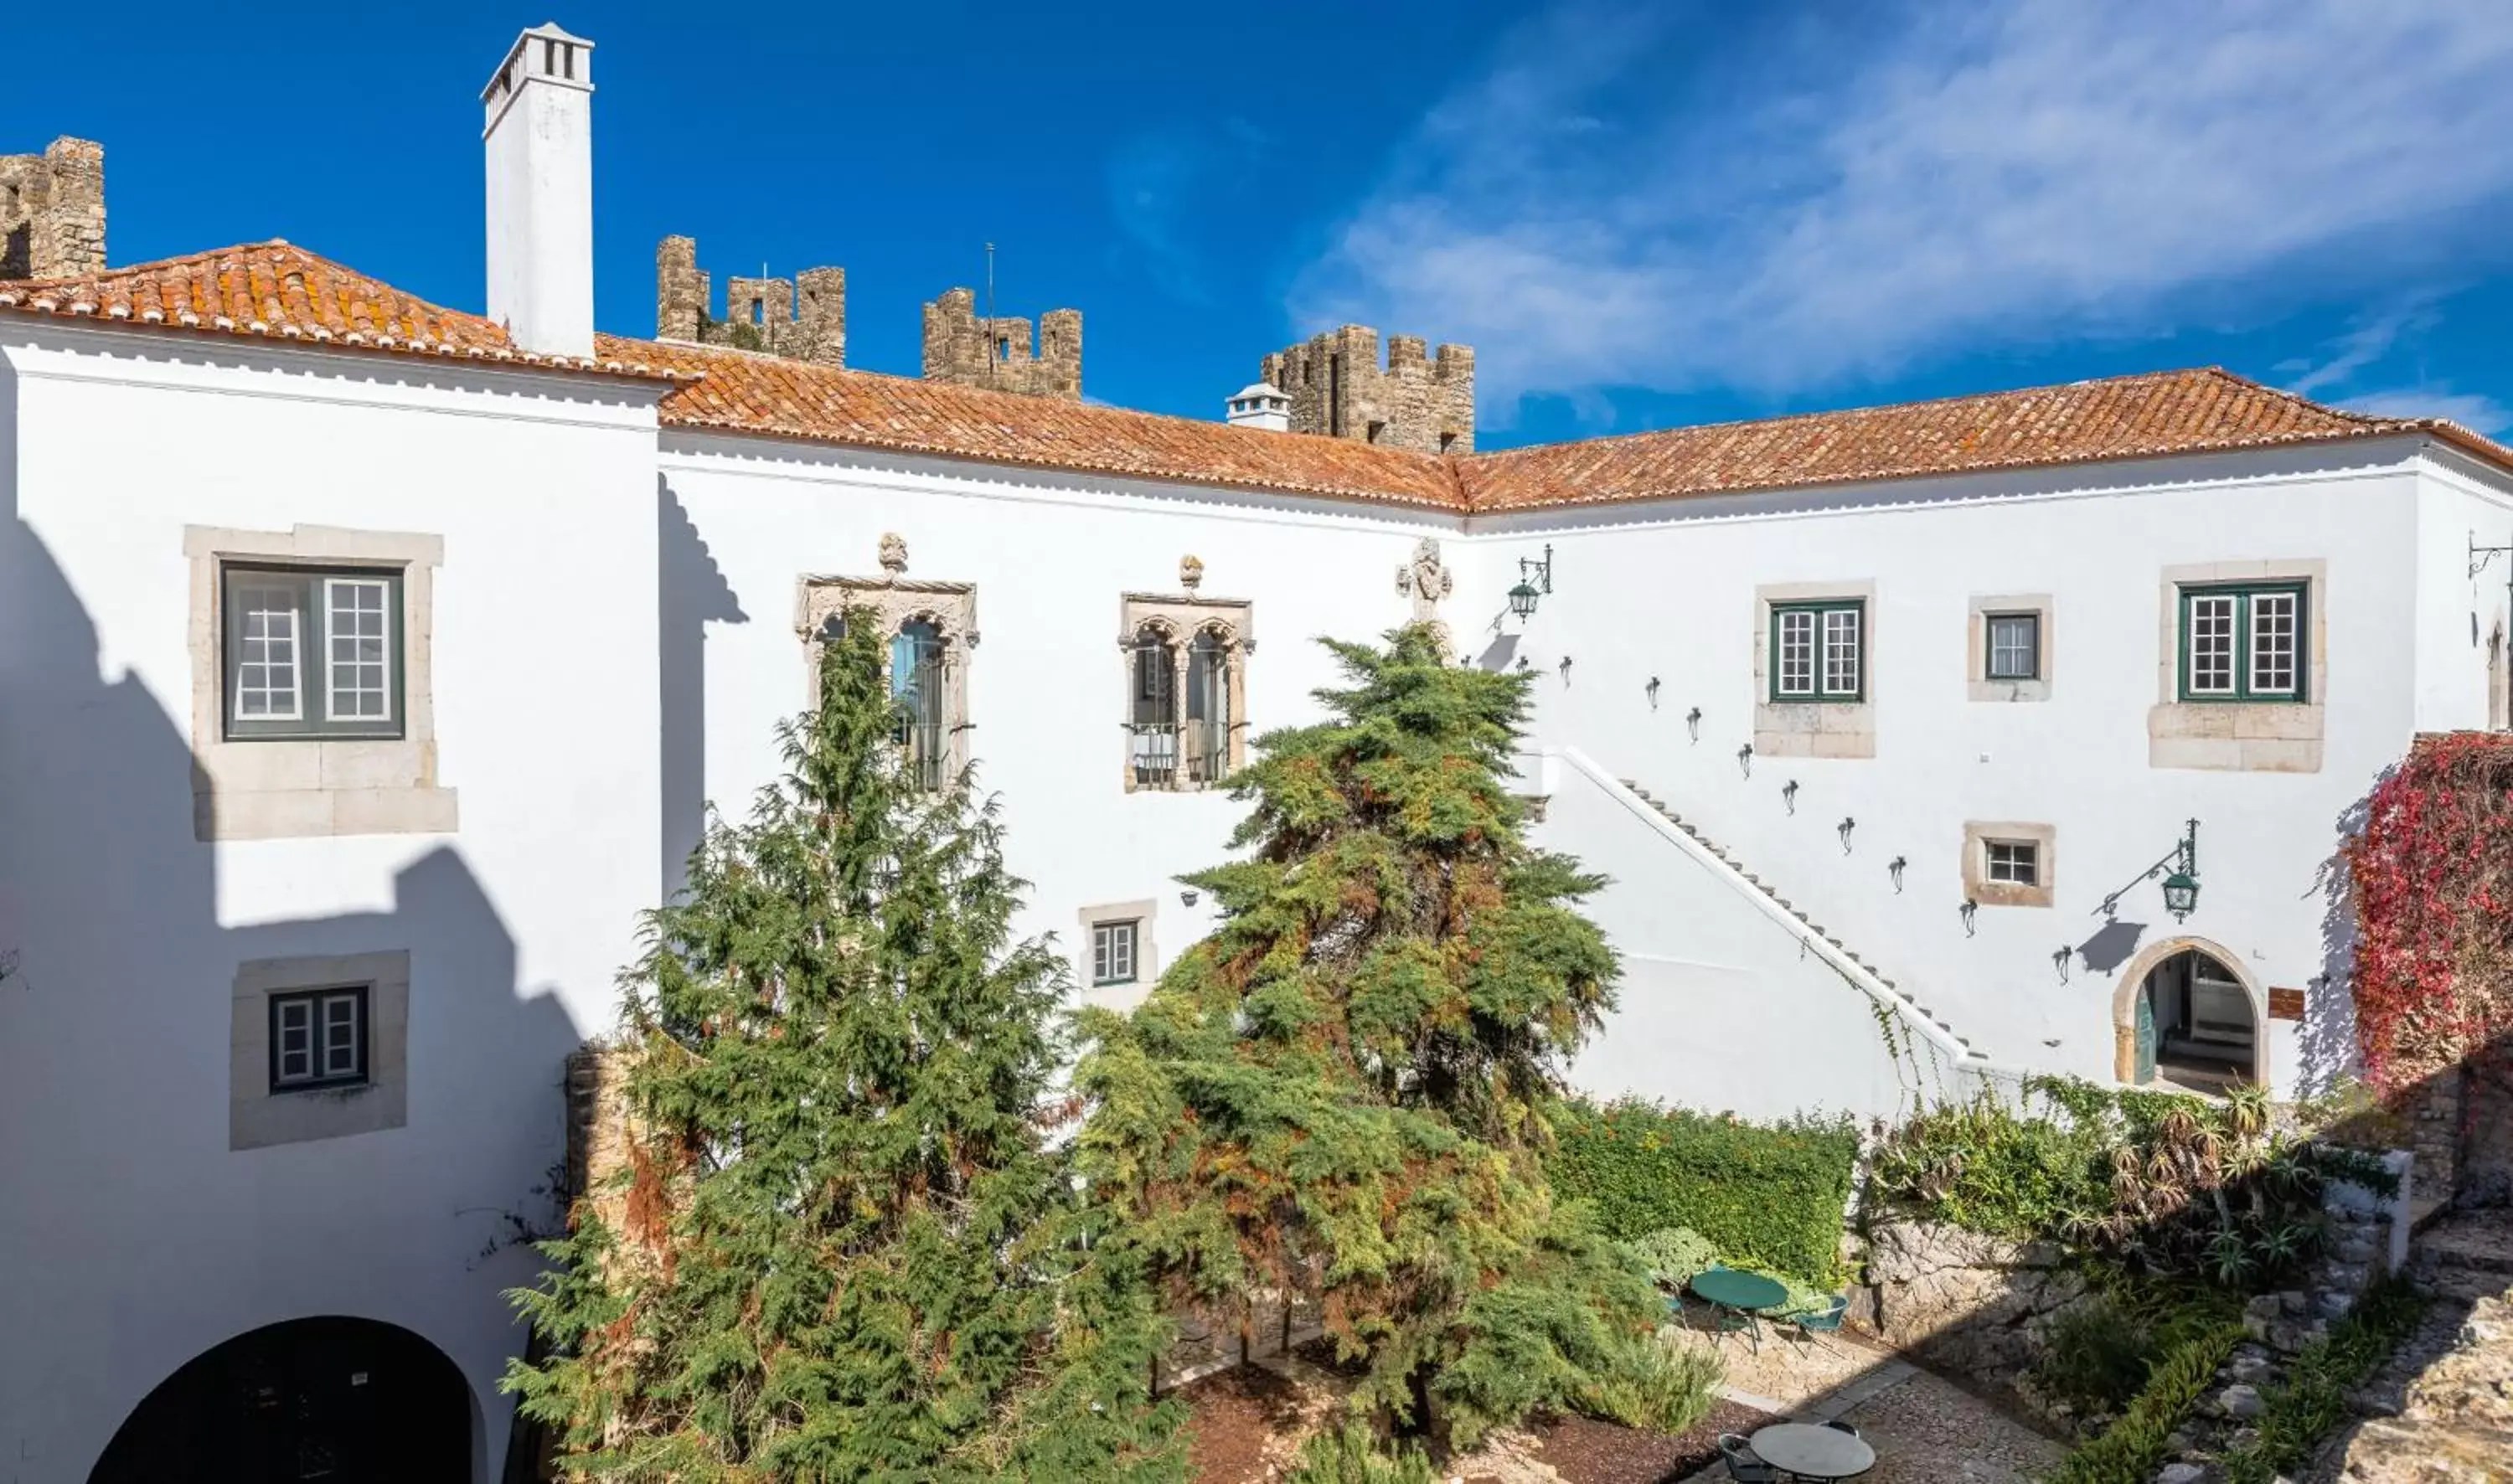 Off site, Property Building in Pousada Castelo de Obidos